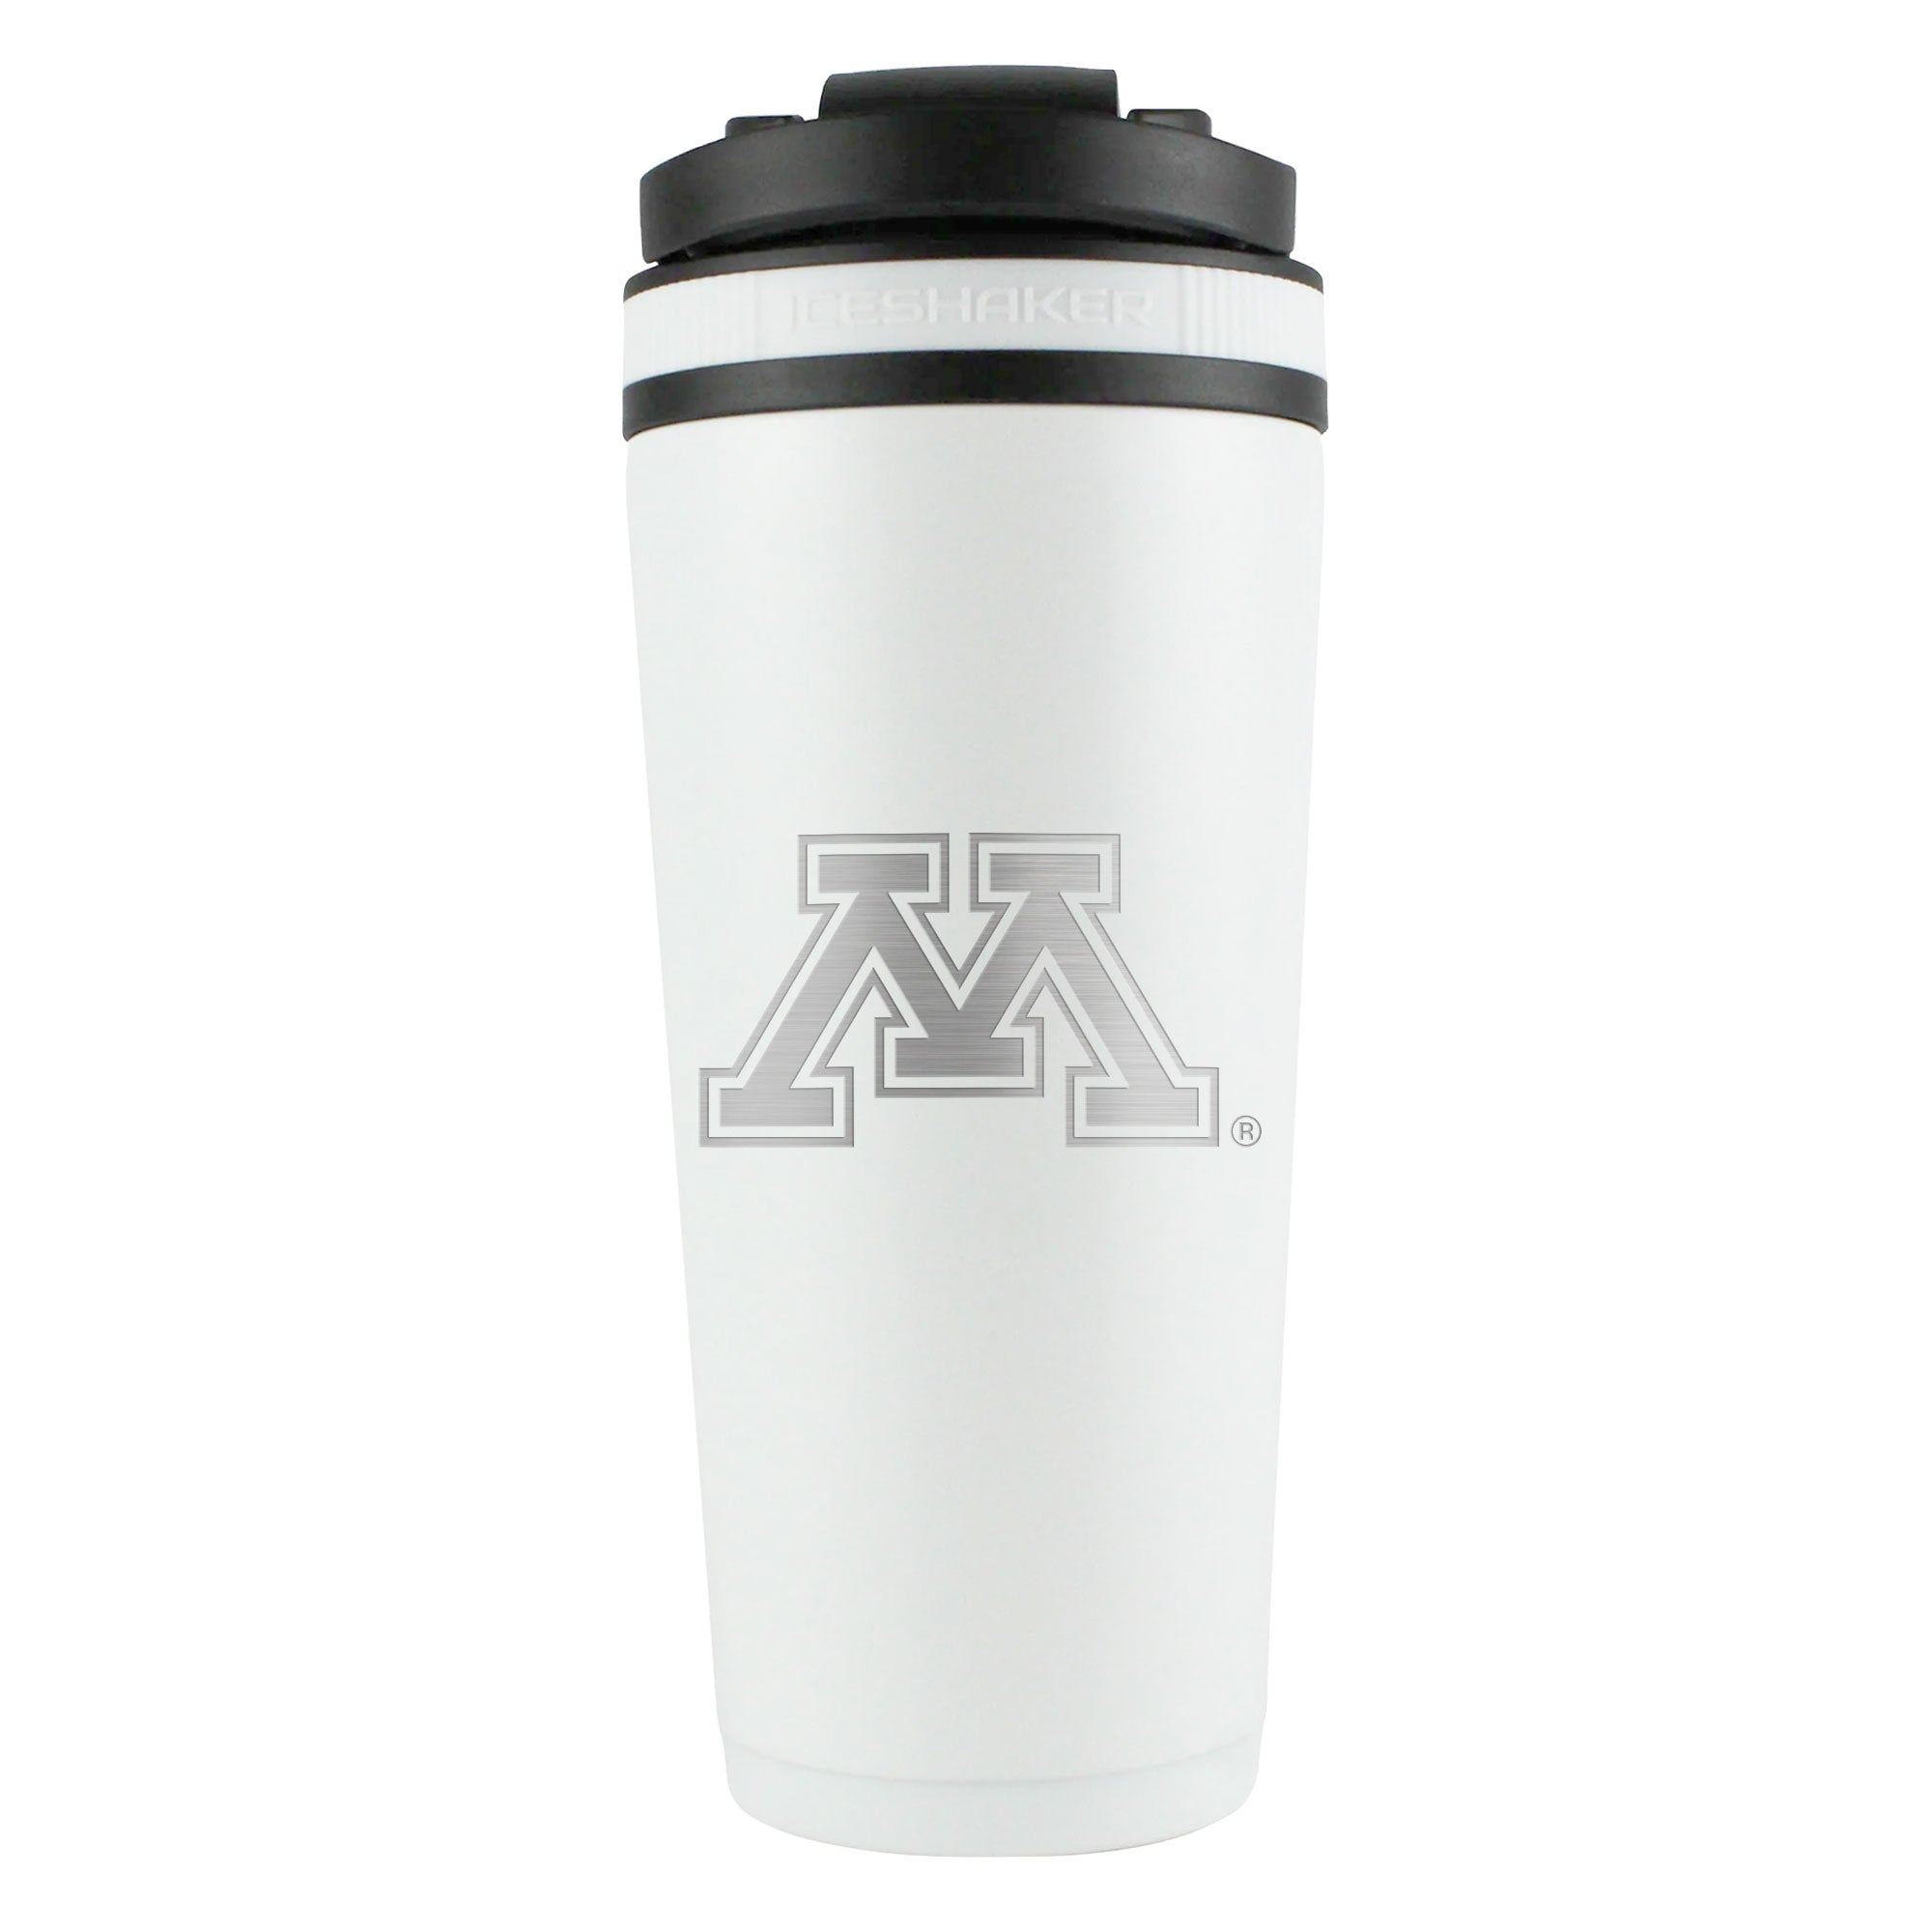 Officially Licensed University of Minnesota 26oz Ice Shaker - White